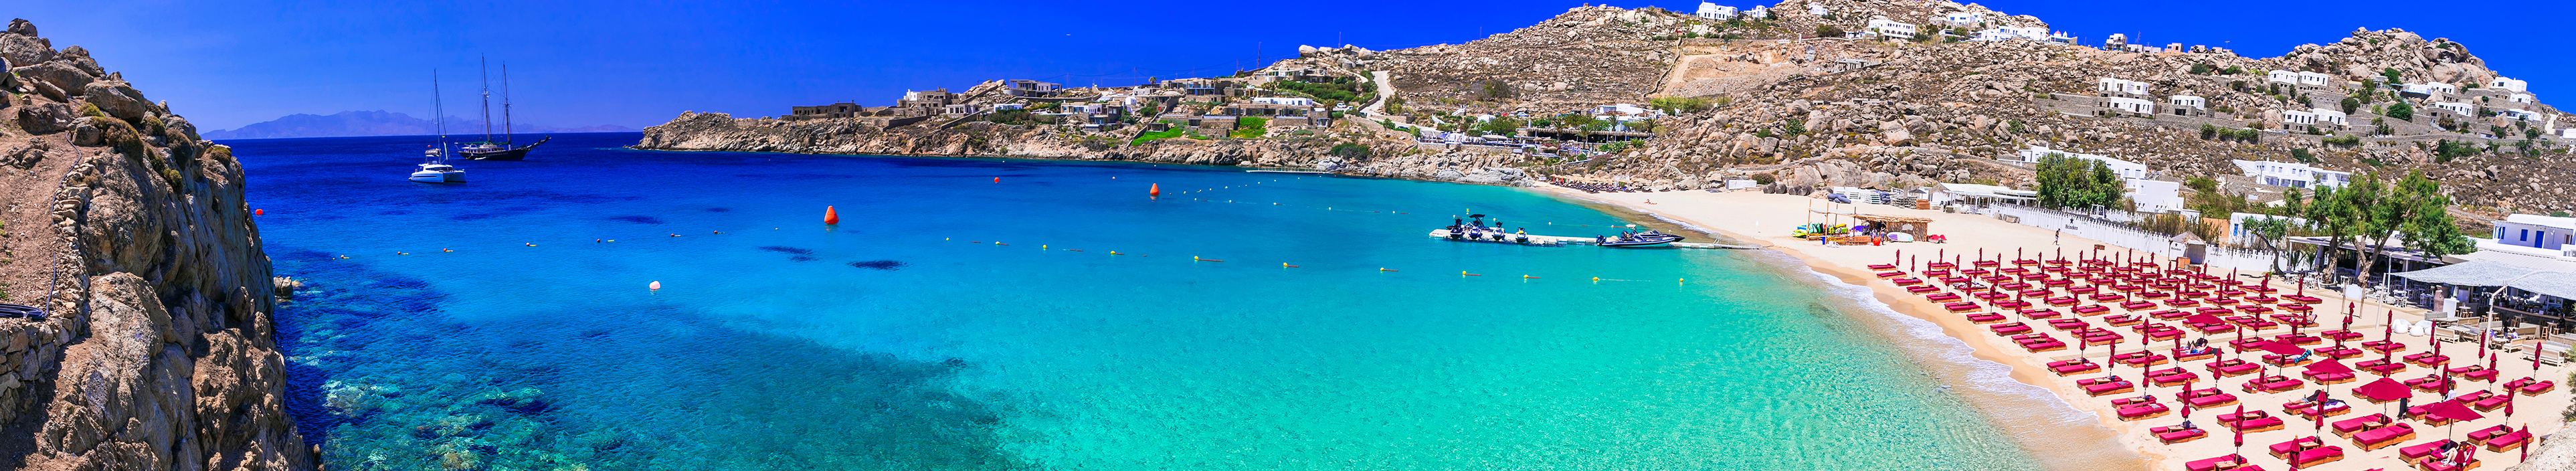 Die berühmten und schönen Strände der Insel Mykonos mit kristallklarem Wasser, Griechenland